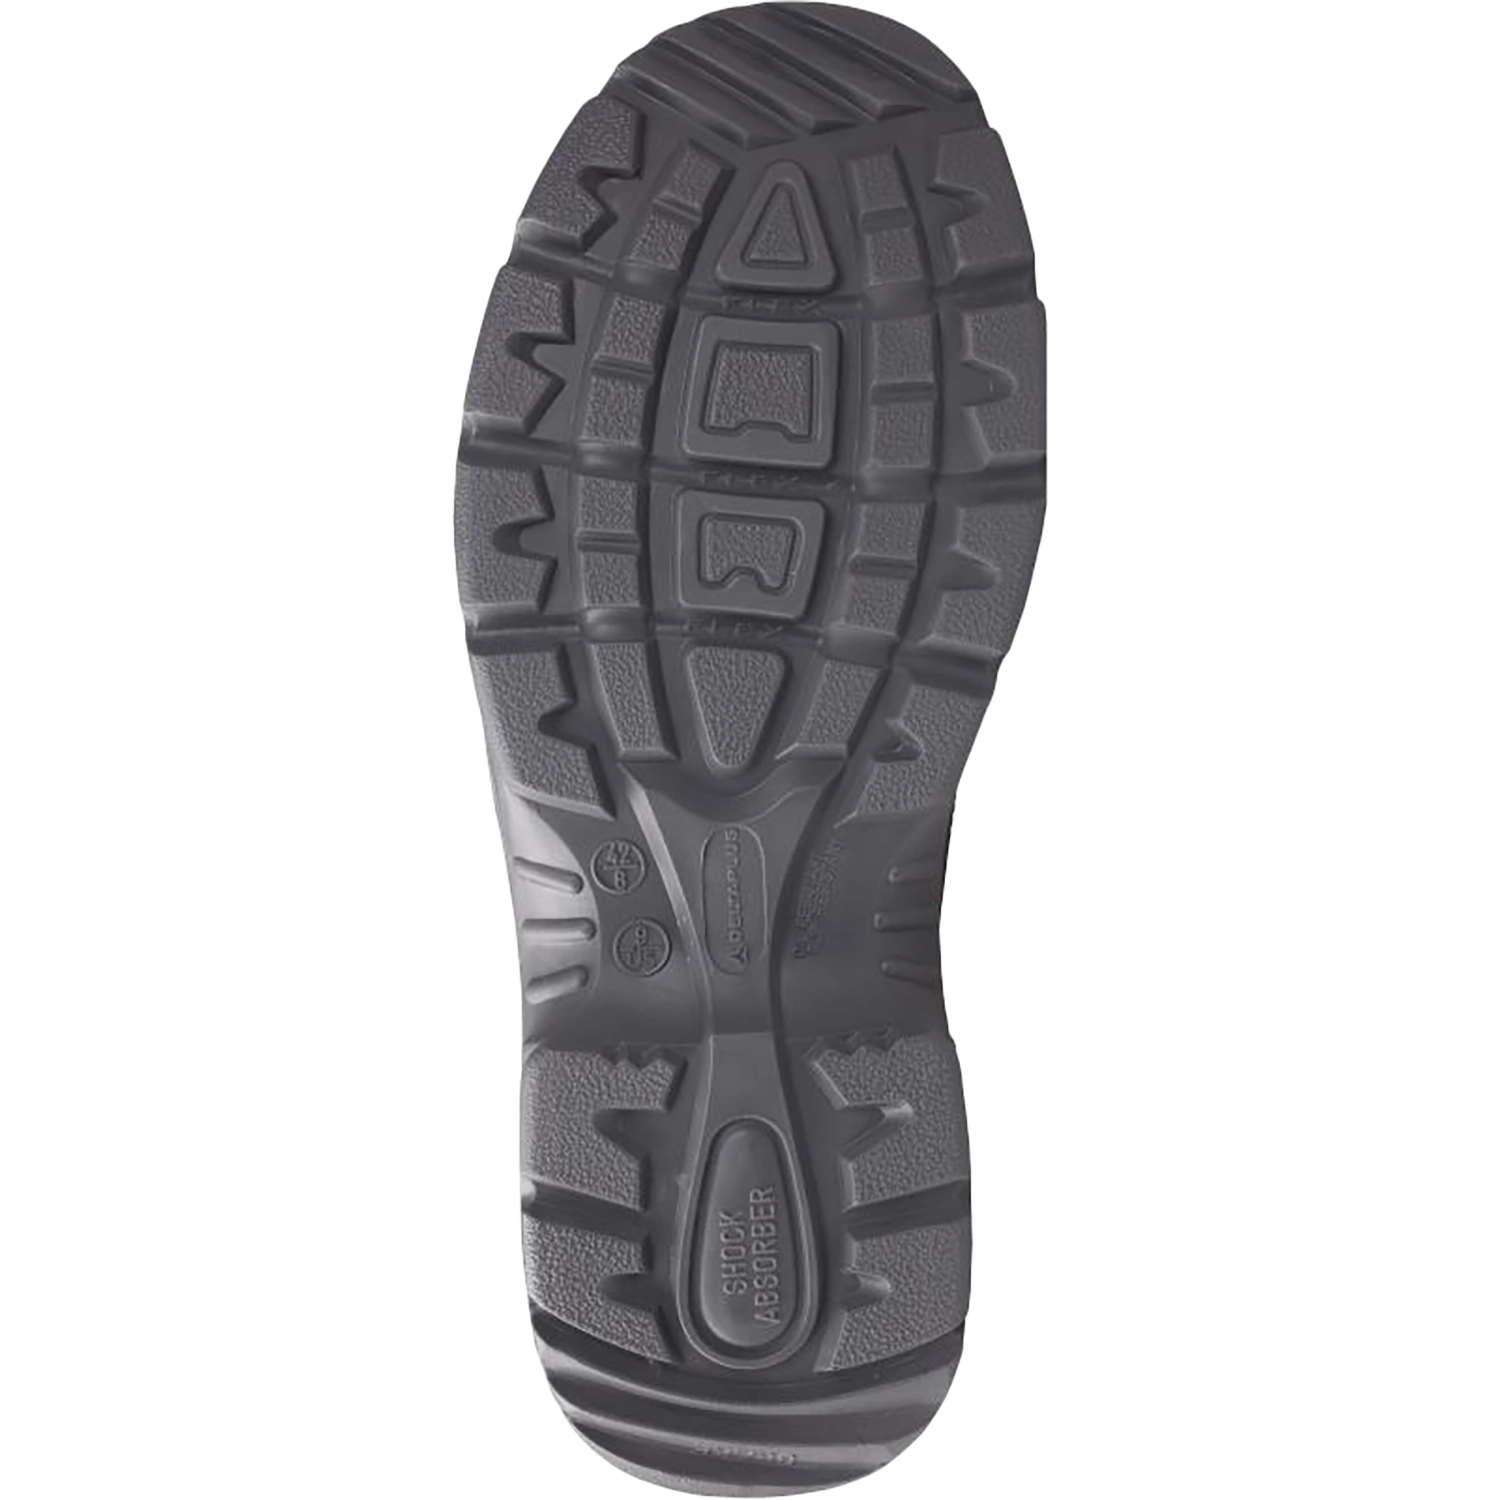 Hoog model schoenen - X-Large  - Sault S3 - zwart - maat 45